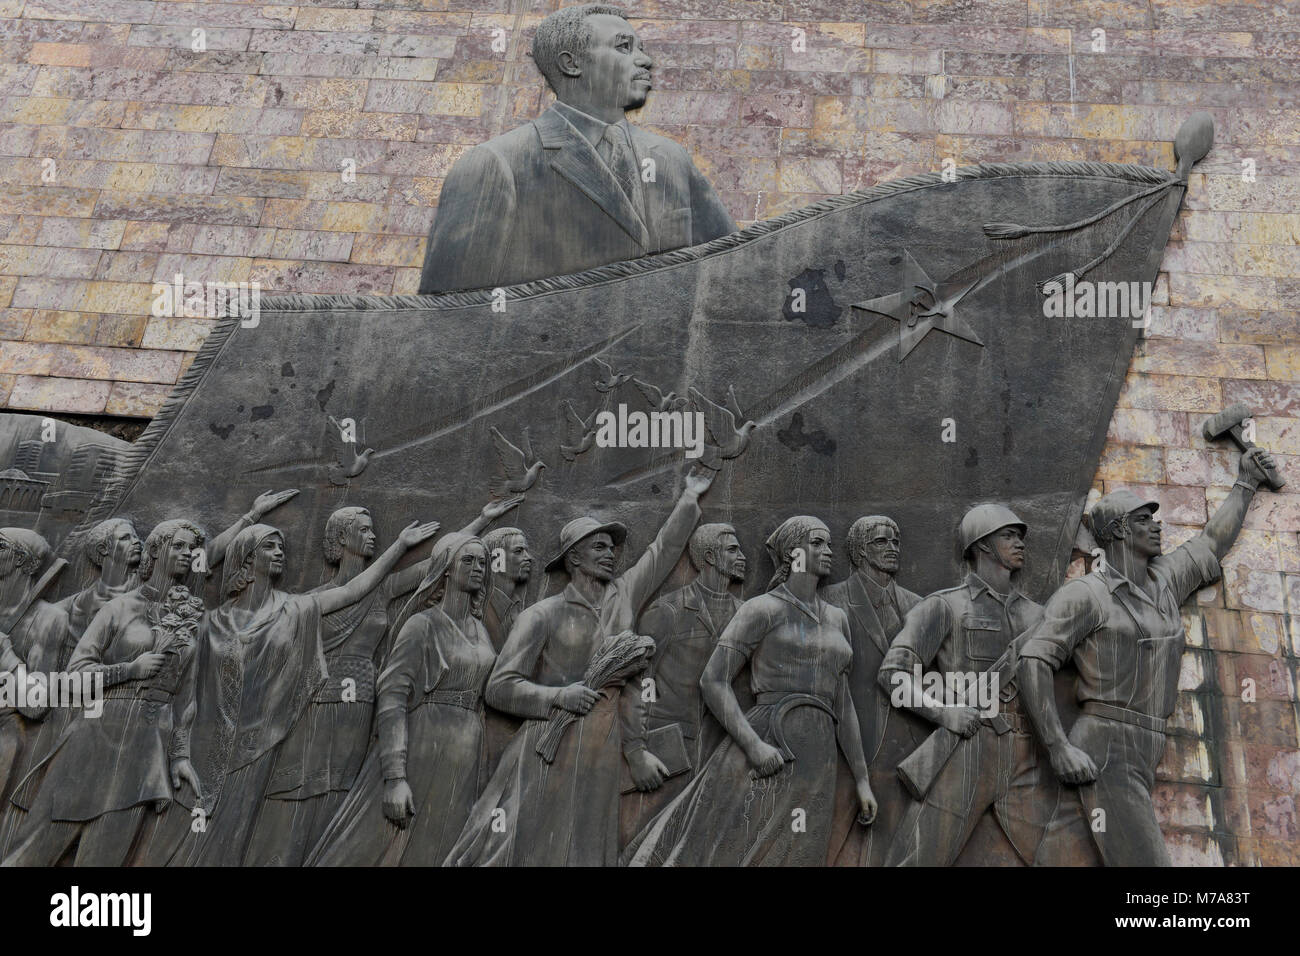 Äthiopien, Addis Abeba, die Tiglachin Denkmal, auch als Derg Denkmal am Churchill Avenue bekannt, Derg war das kommunistische Regime unter dem Diktator Mengistu Haile Mariam, ist ein Denkmal für äthiopische und kubanische Soldaten in der Ogaden-krieg zwischen Somalia und Äthiopien, am 12. September 1984 eingeweiht, die Statuen wurde von Nordkorea gespendet, und wurde von der Mansudae Art Studio hergestellt, Wand Relief mit Arbeiter, Bauern und Soldaten, angeführt von dem Diktator/AETHIOPIEN, Addis Abeba, Monument aus der kommunistischen Derg Zeit Stockfoto